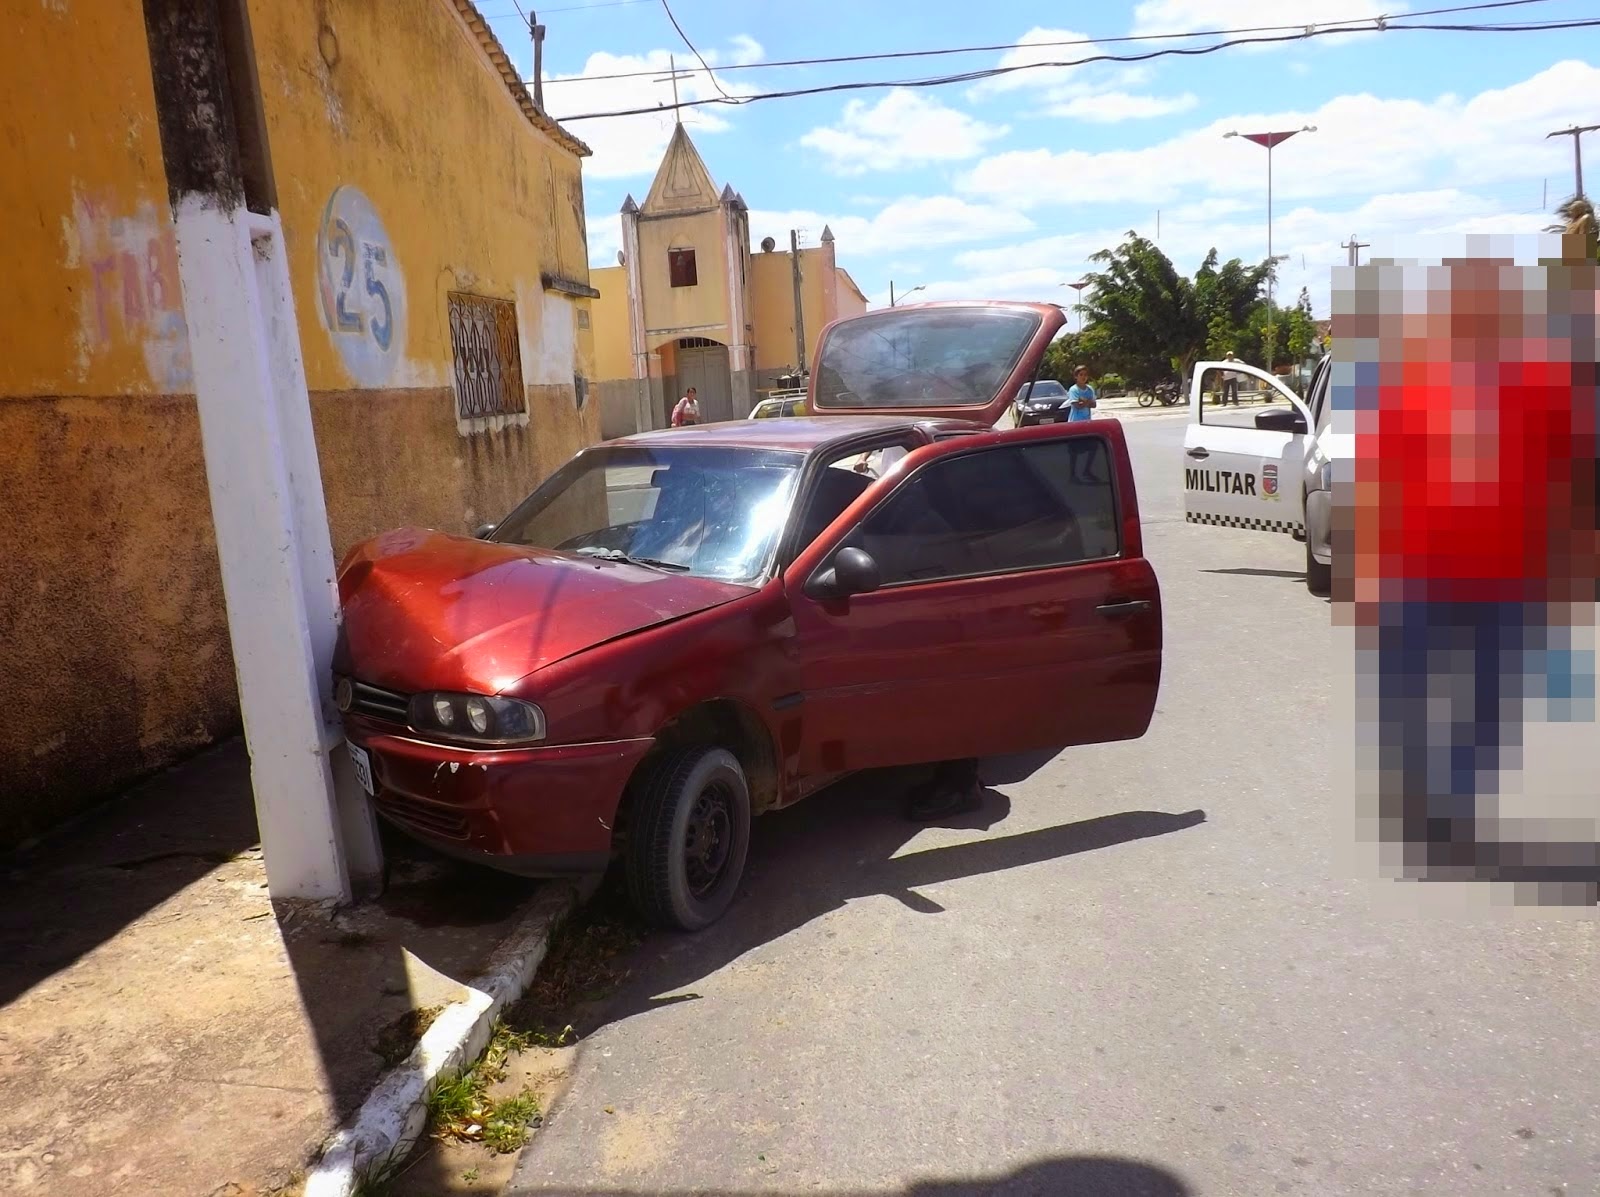 Jovem perde controle do carro e colide em poste, próximo a Igreja Católica em Jaçanã/RN